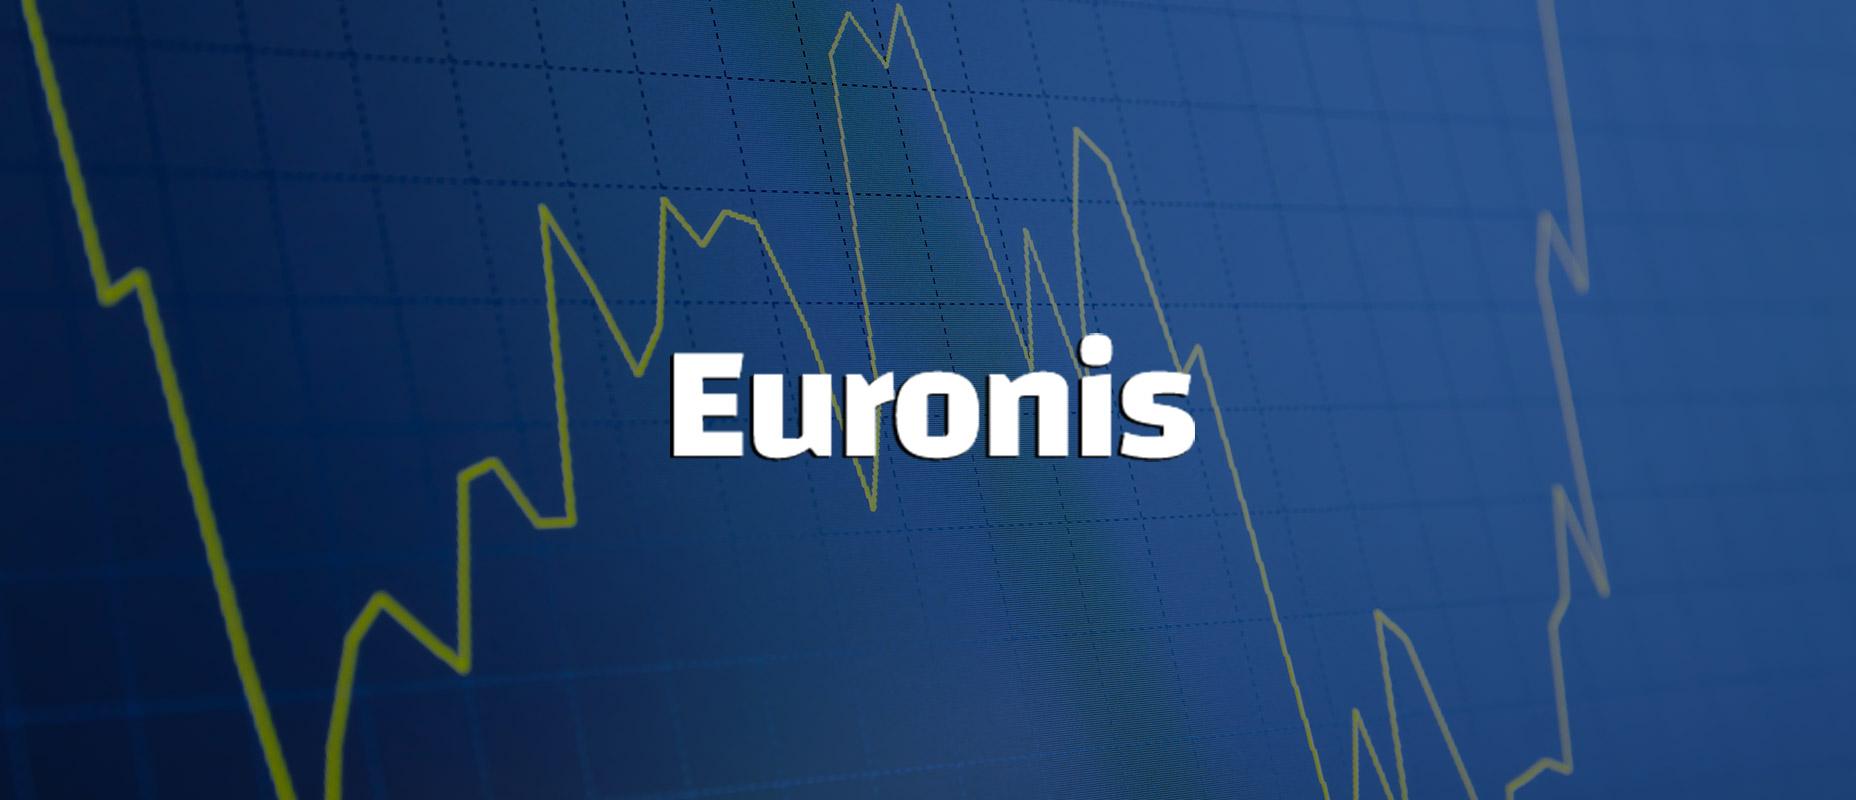 Come utilizzare Euronis: impostazioni e test